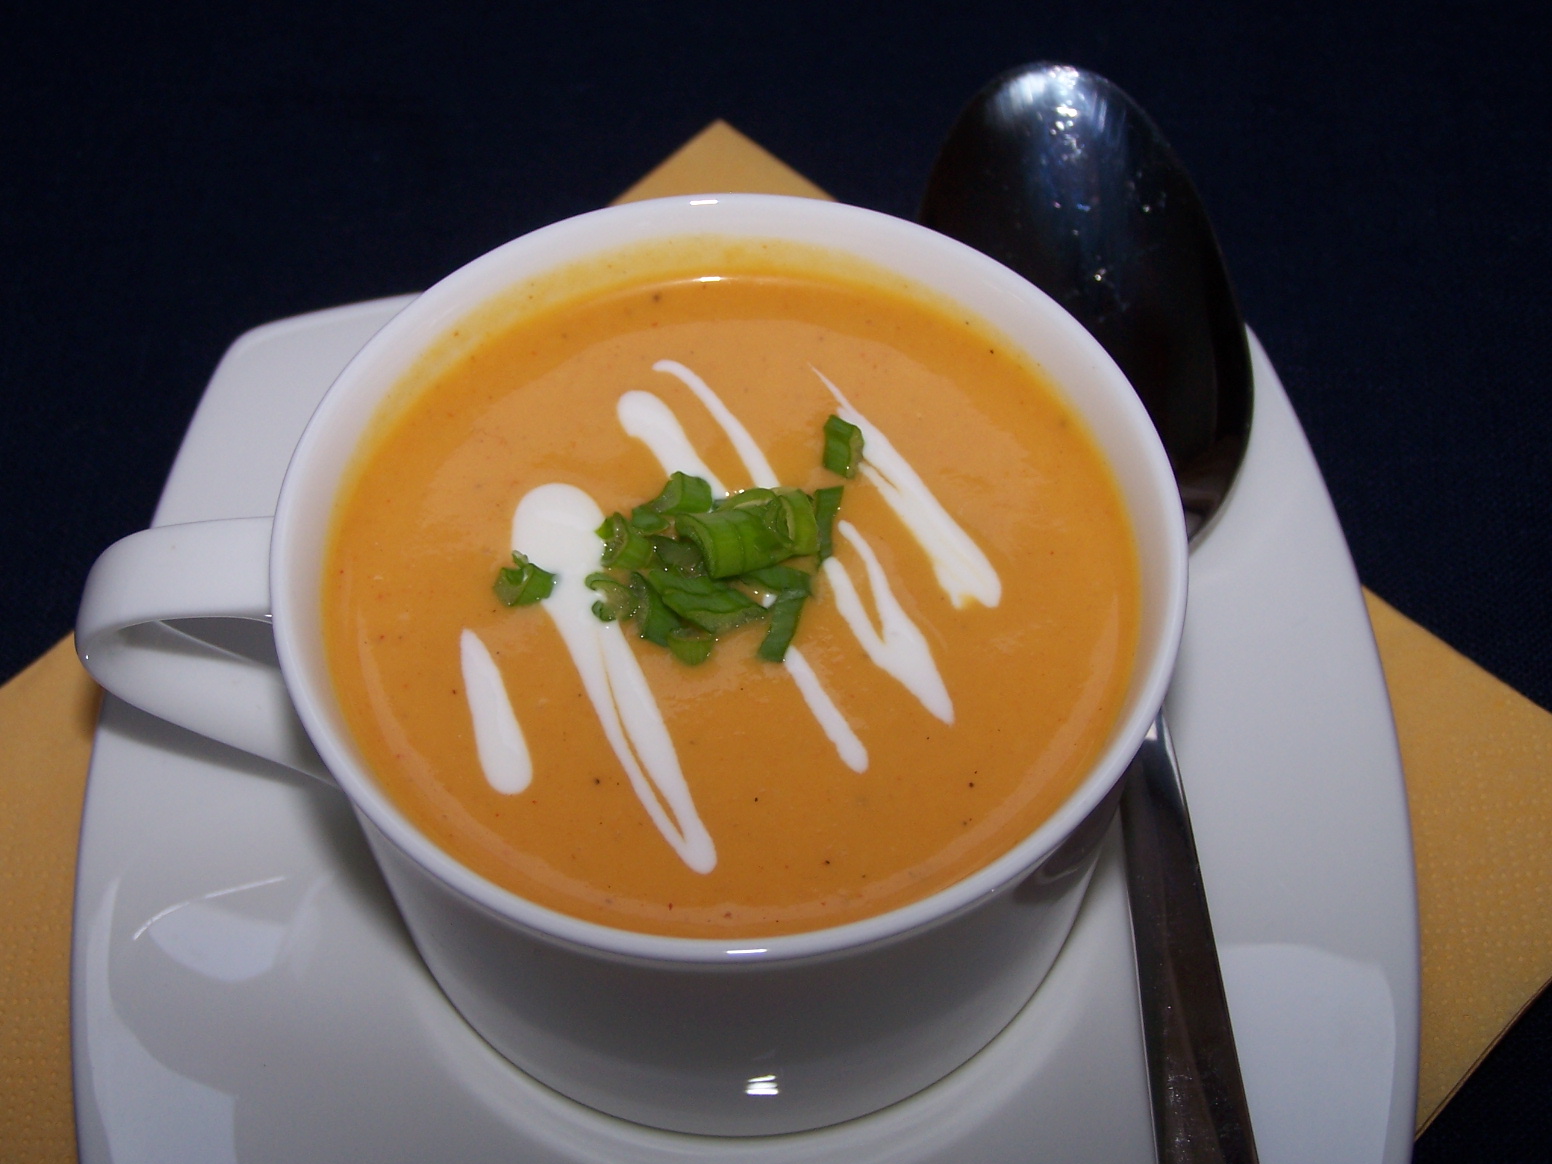 Kolorowe zupy zdrowe, czyli kremów ciąg dalszy :)